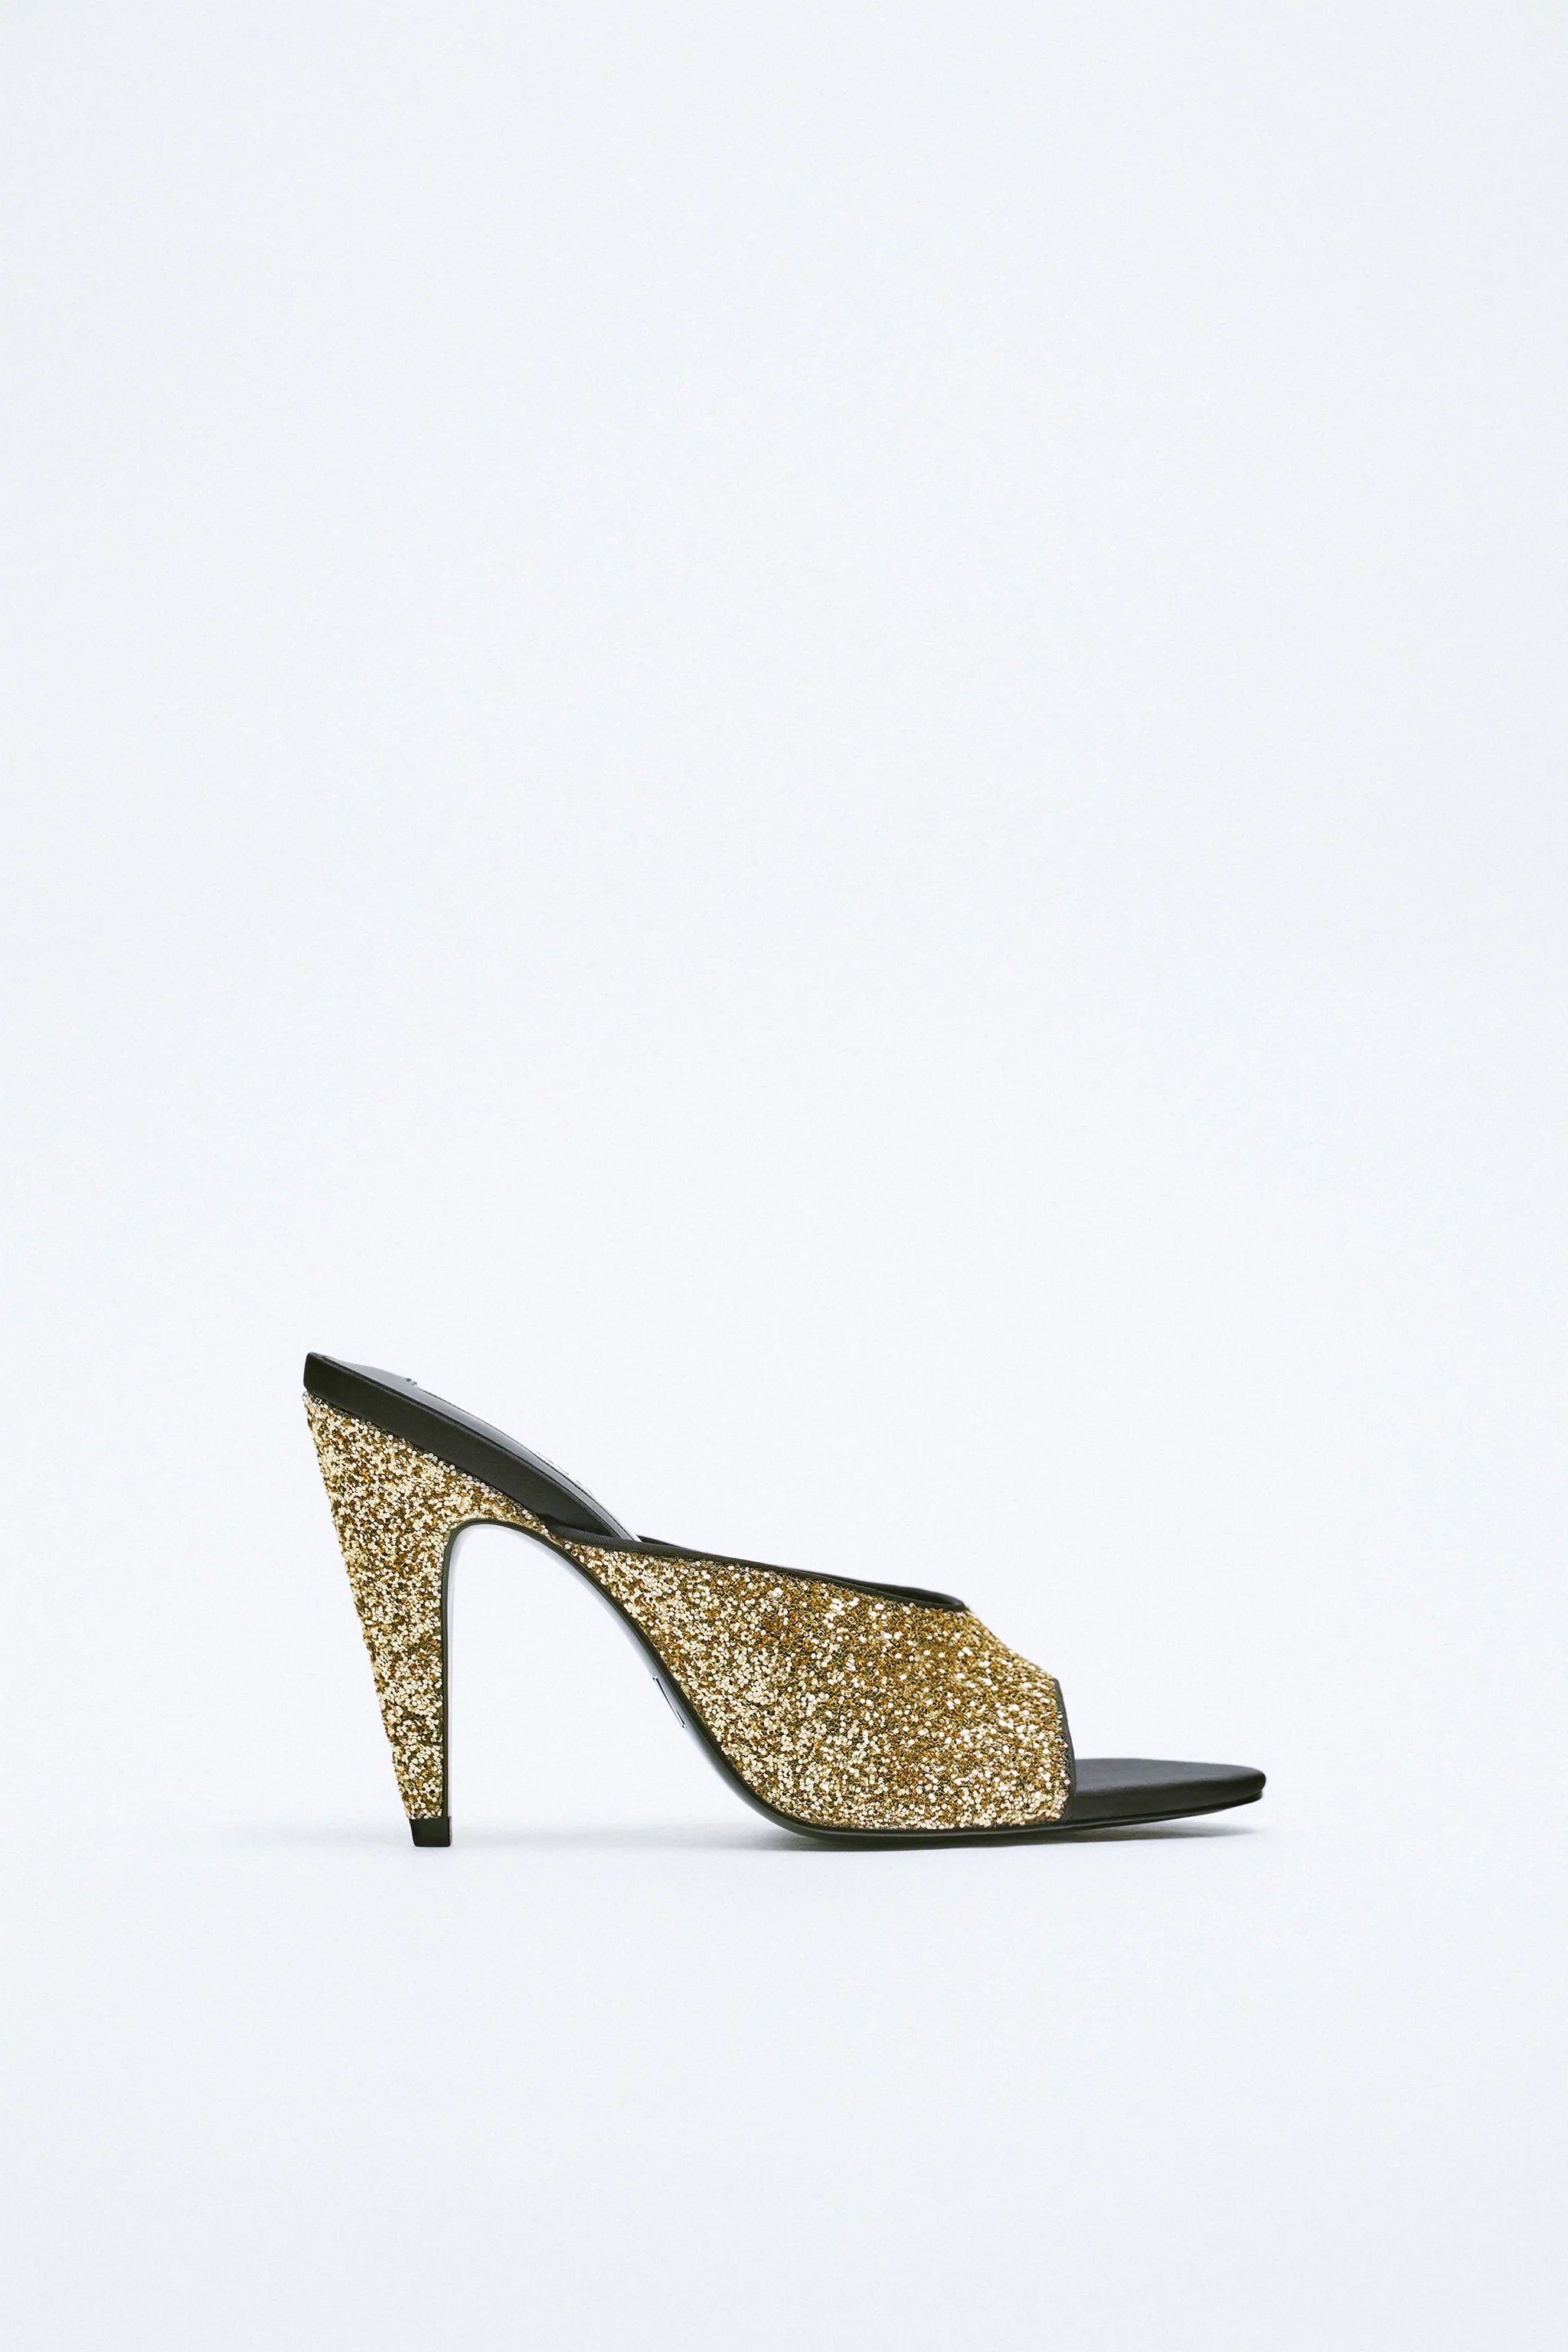 Zara Glitter Sandals